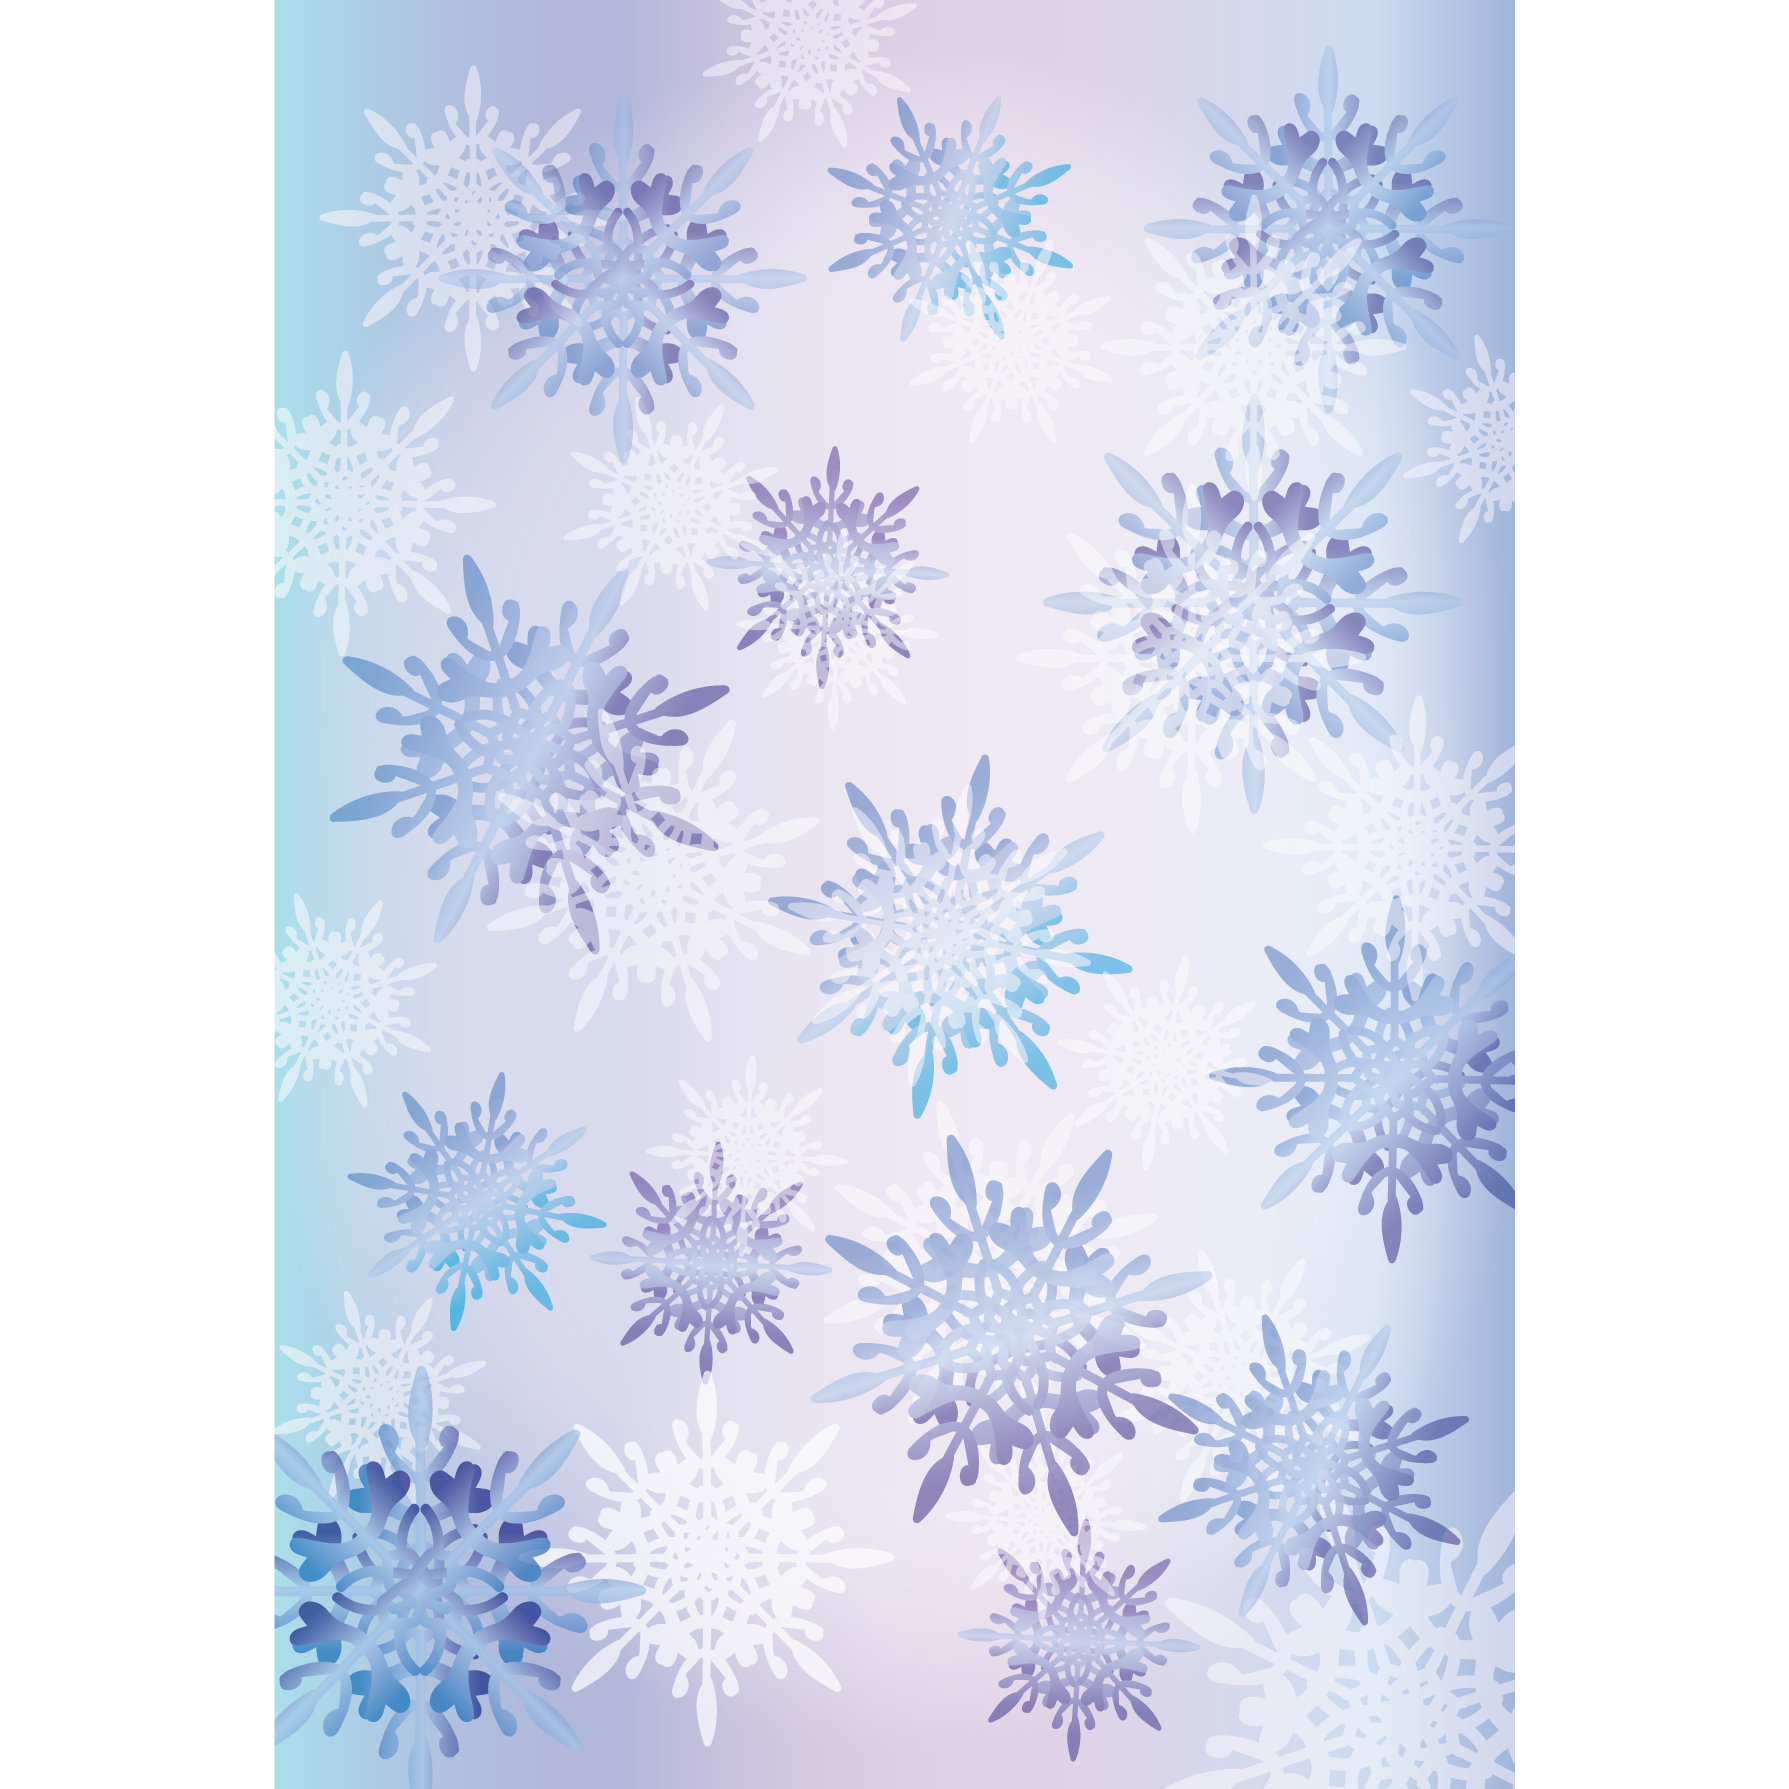 大人かわいい 雪の結晶の背景 デザイン素材 フリーイラスト 商用フリー 無料 のイラスト素材なら イラストマンション